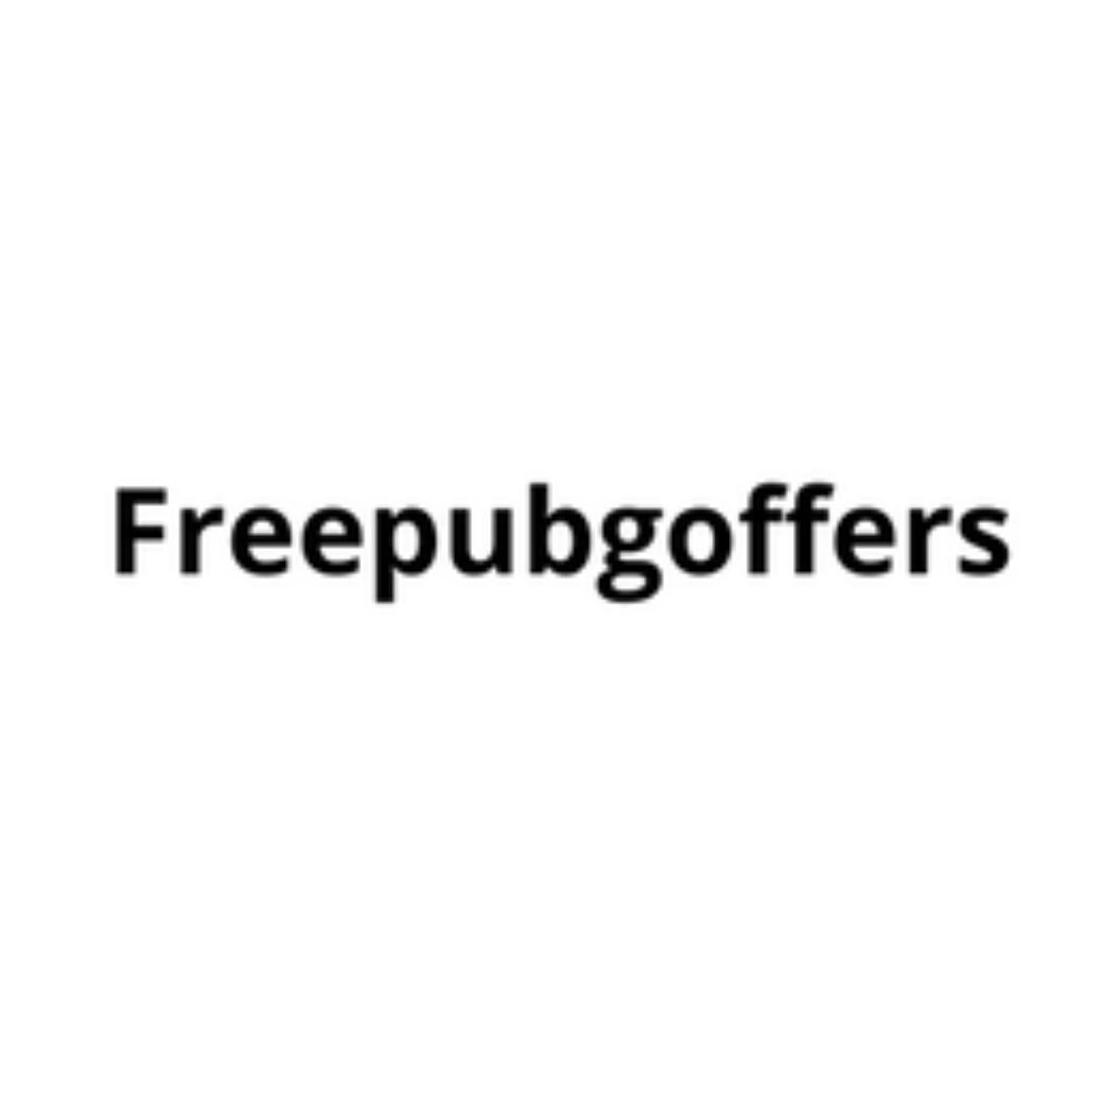 freepubgoffer